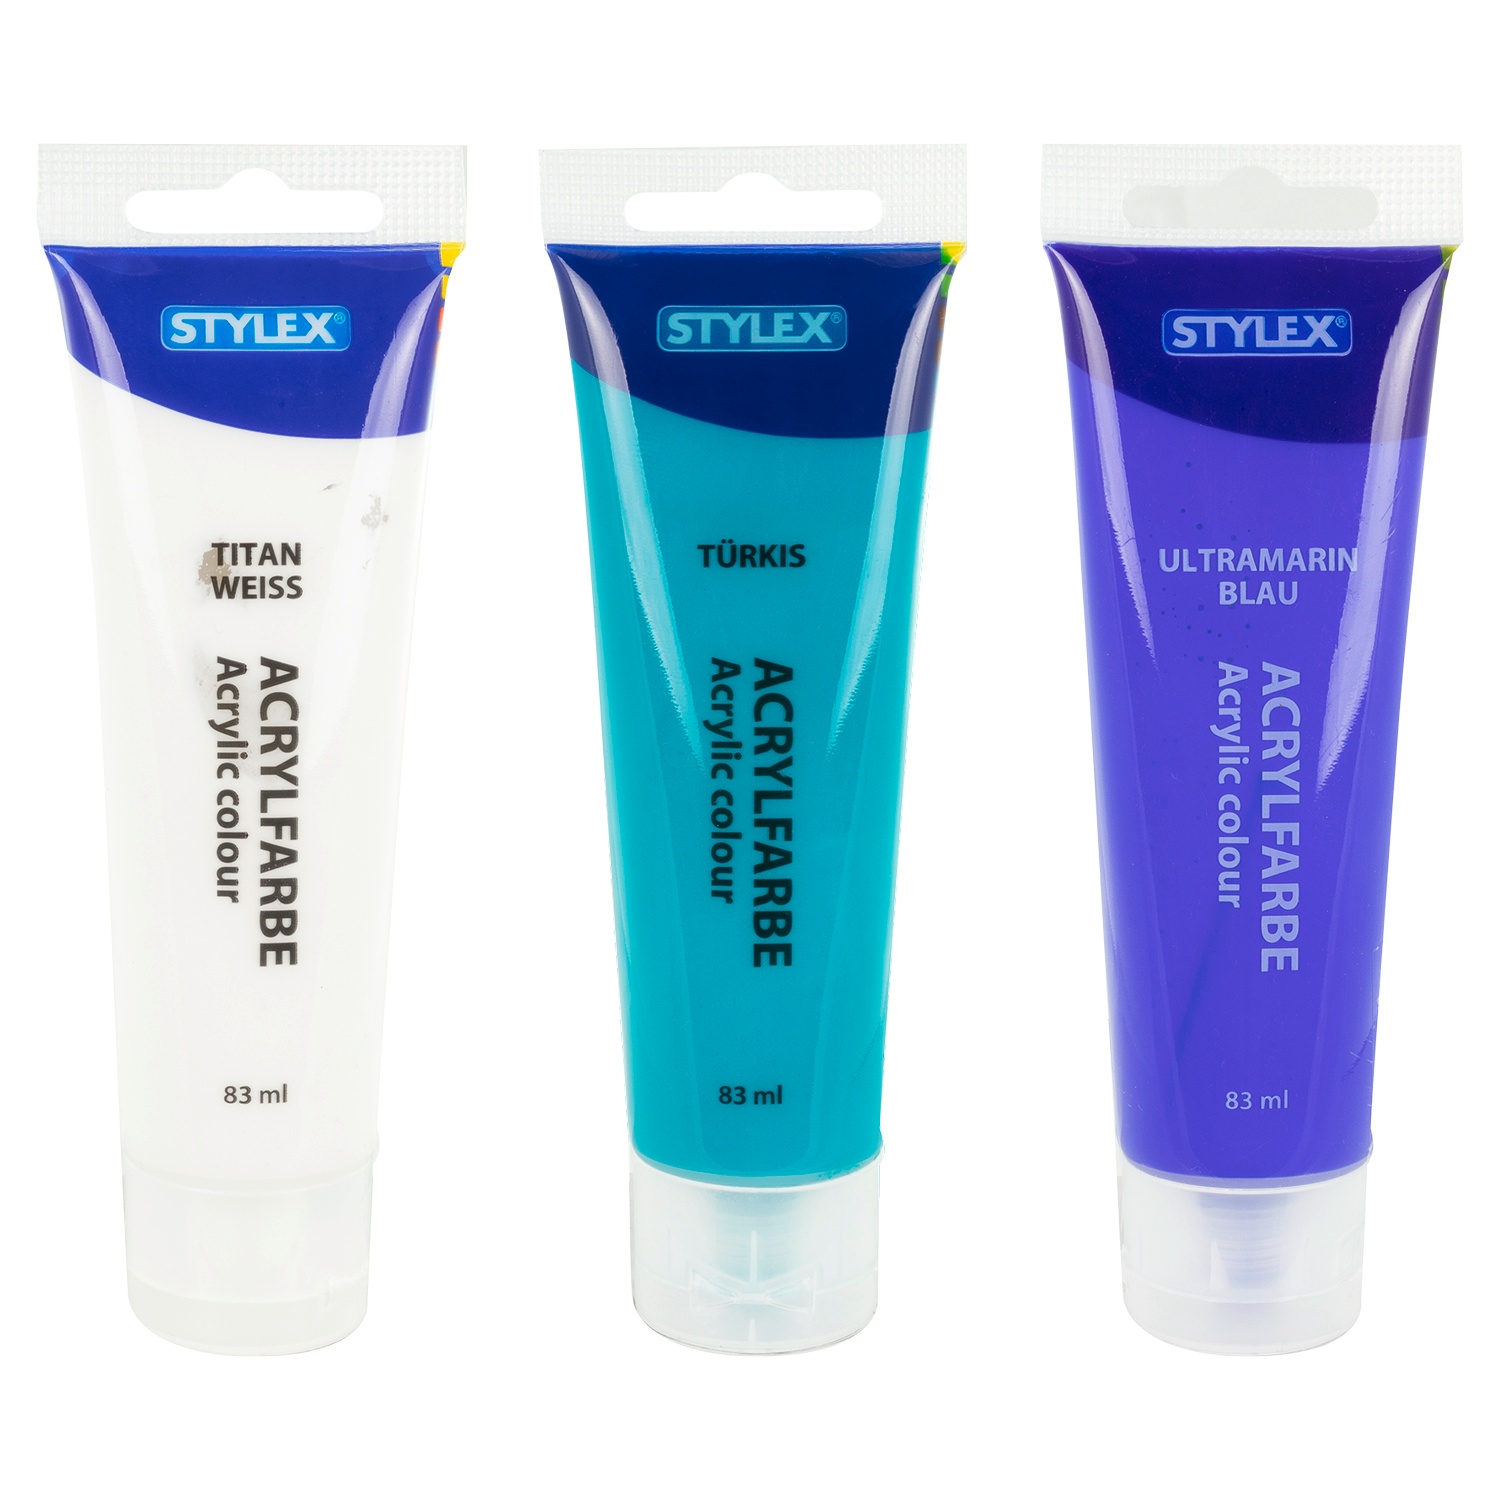 Stylex Künstlerbedarf Acrylfarben / etc.